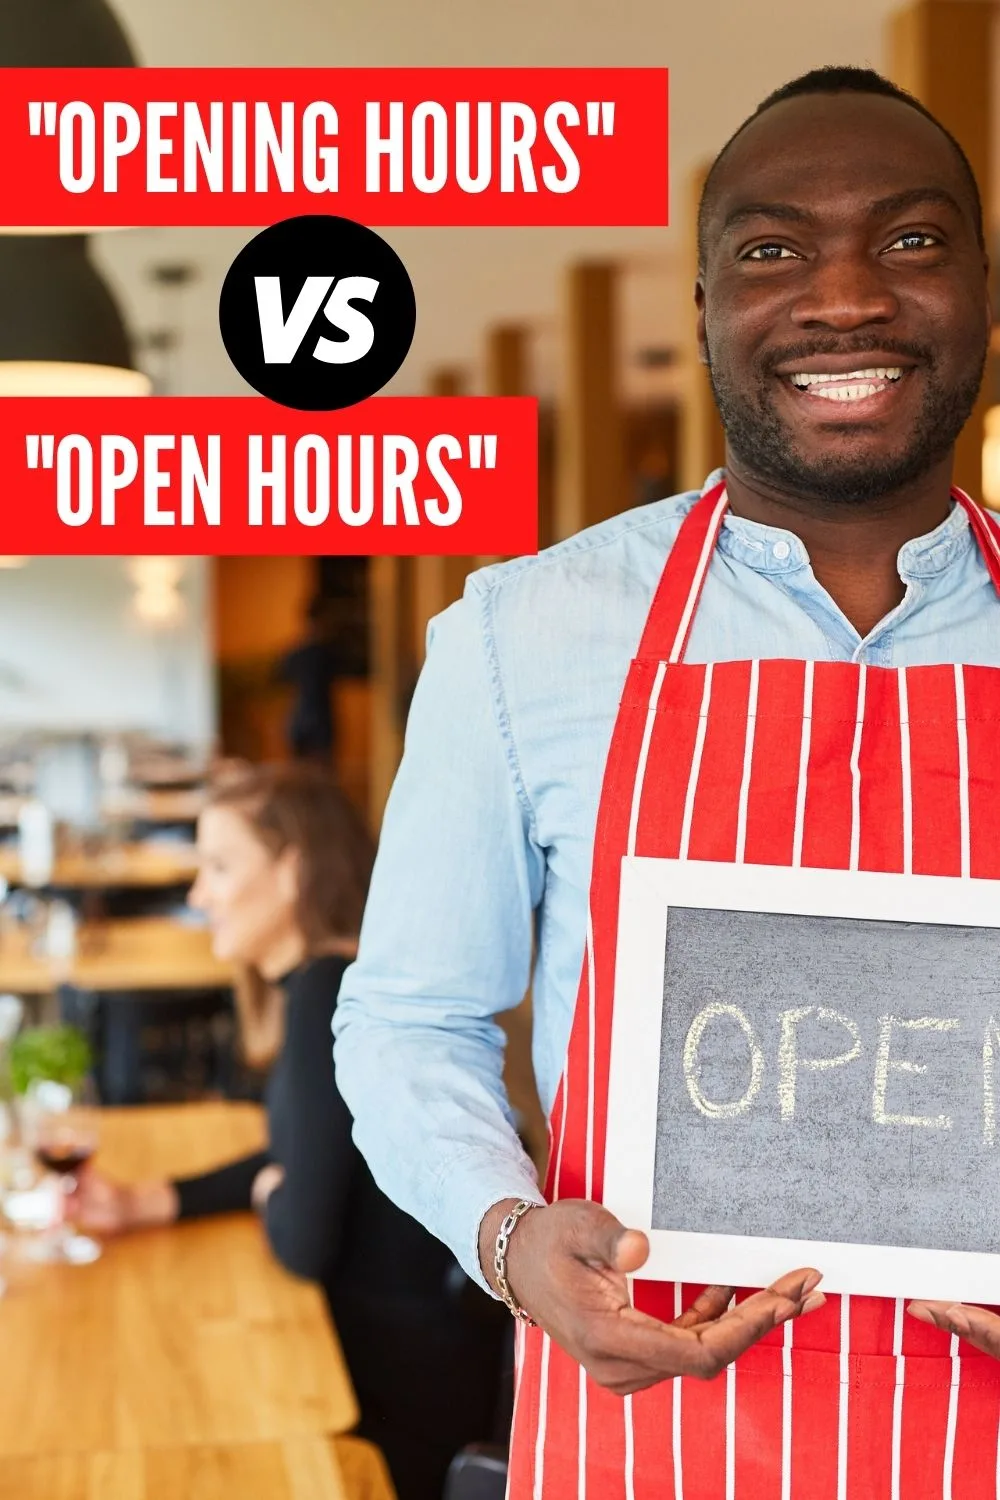 Open Hours vs. Opening Hours